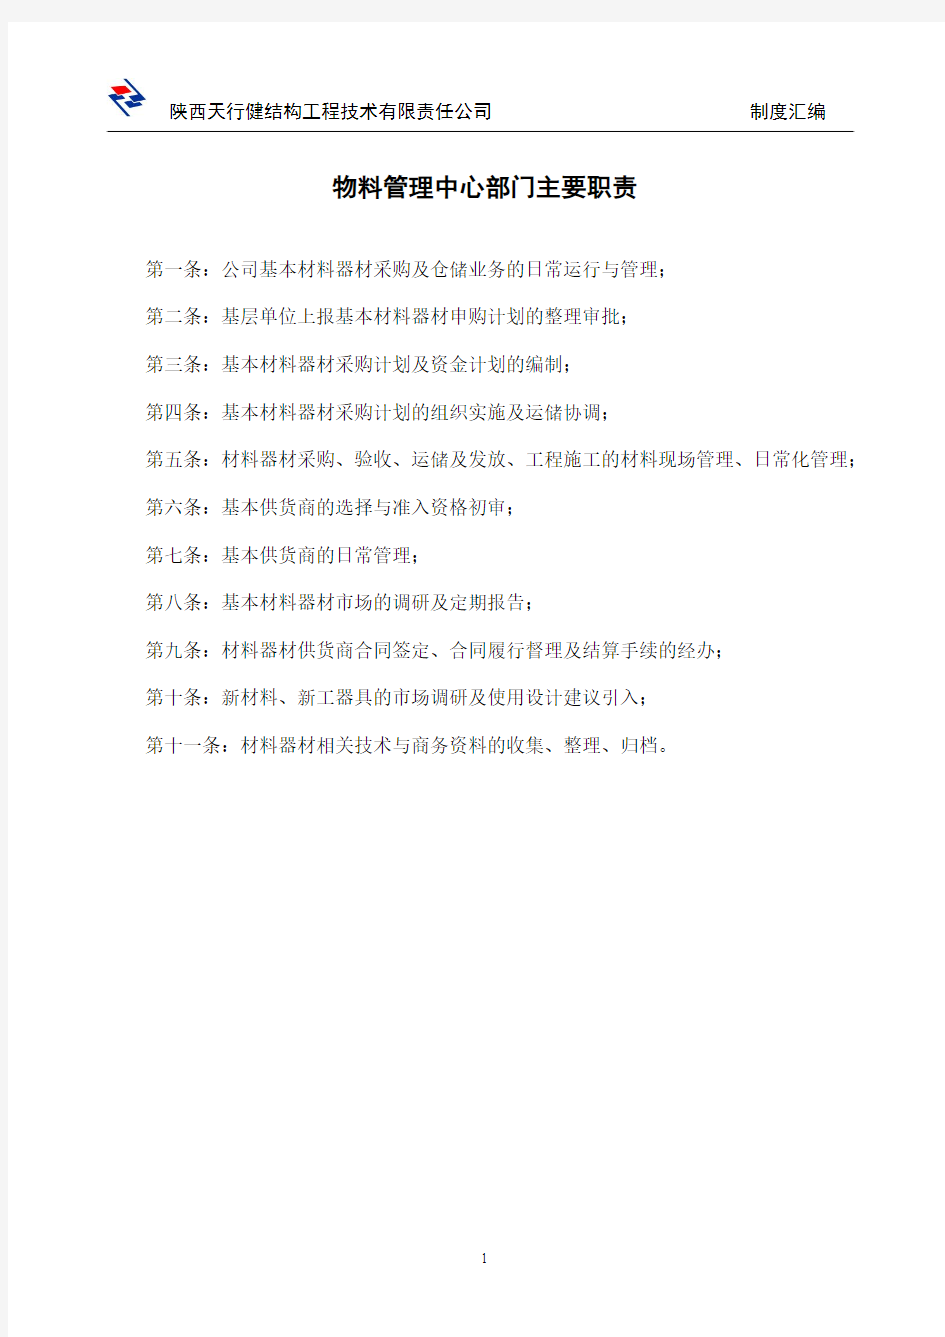 物料中心制度(定版)2014.6.17-3.5